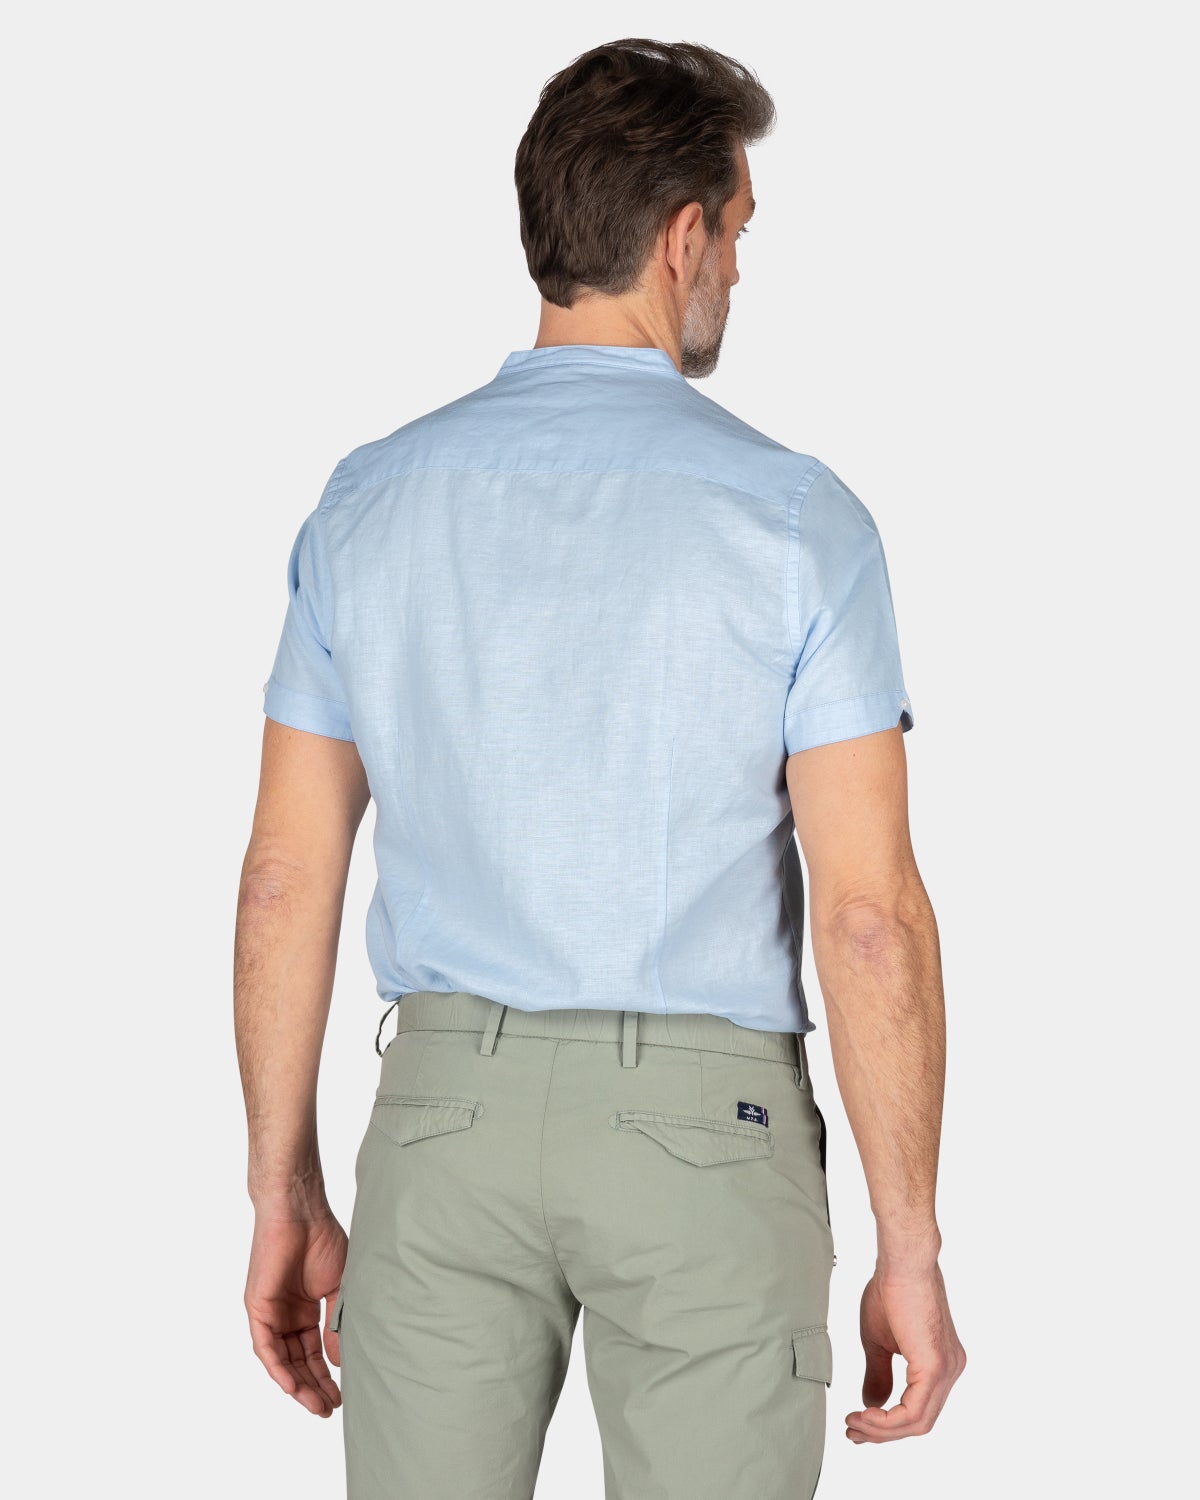 Plain shirt short sleeves - Rhythm Blue